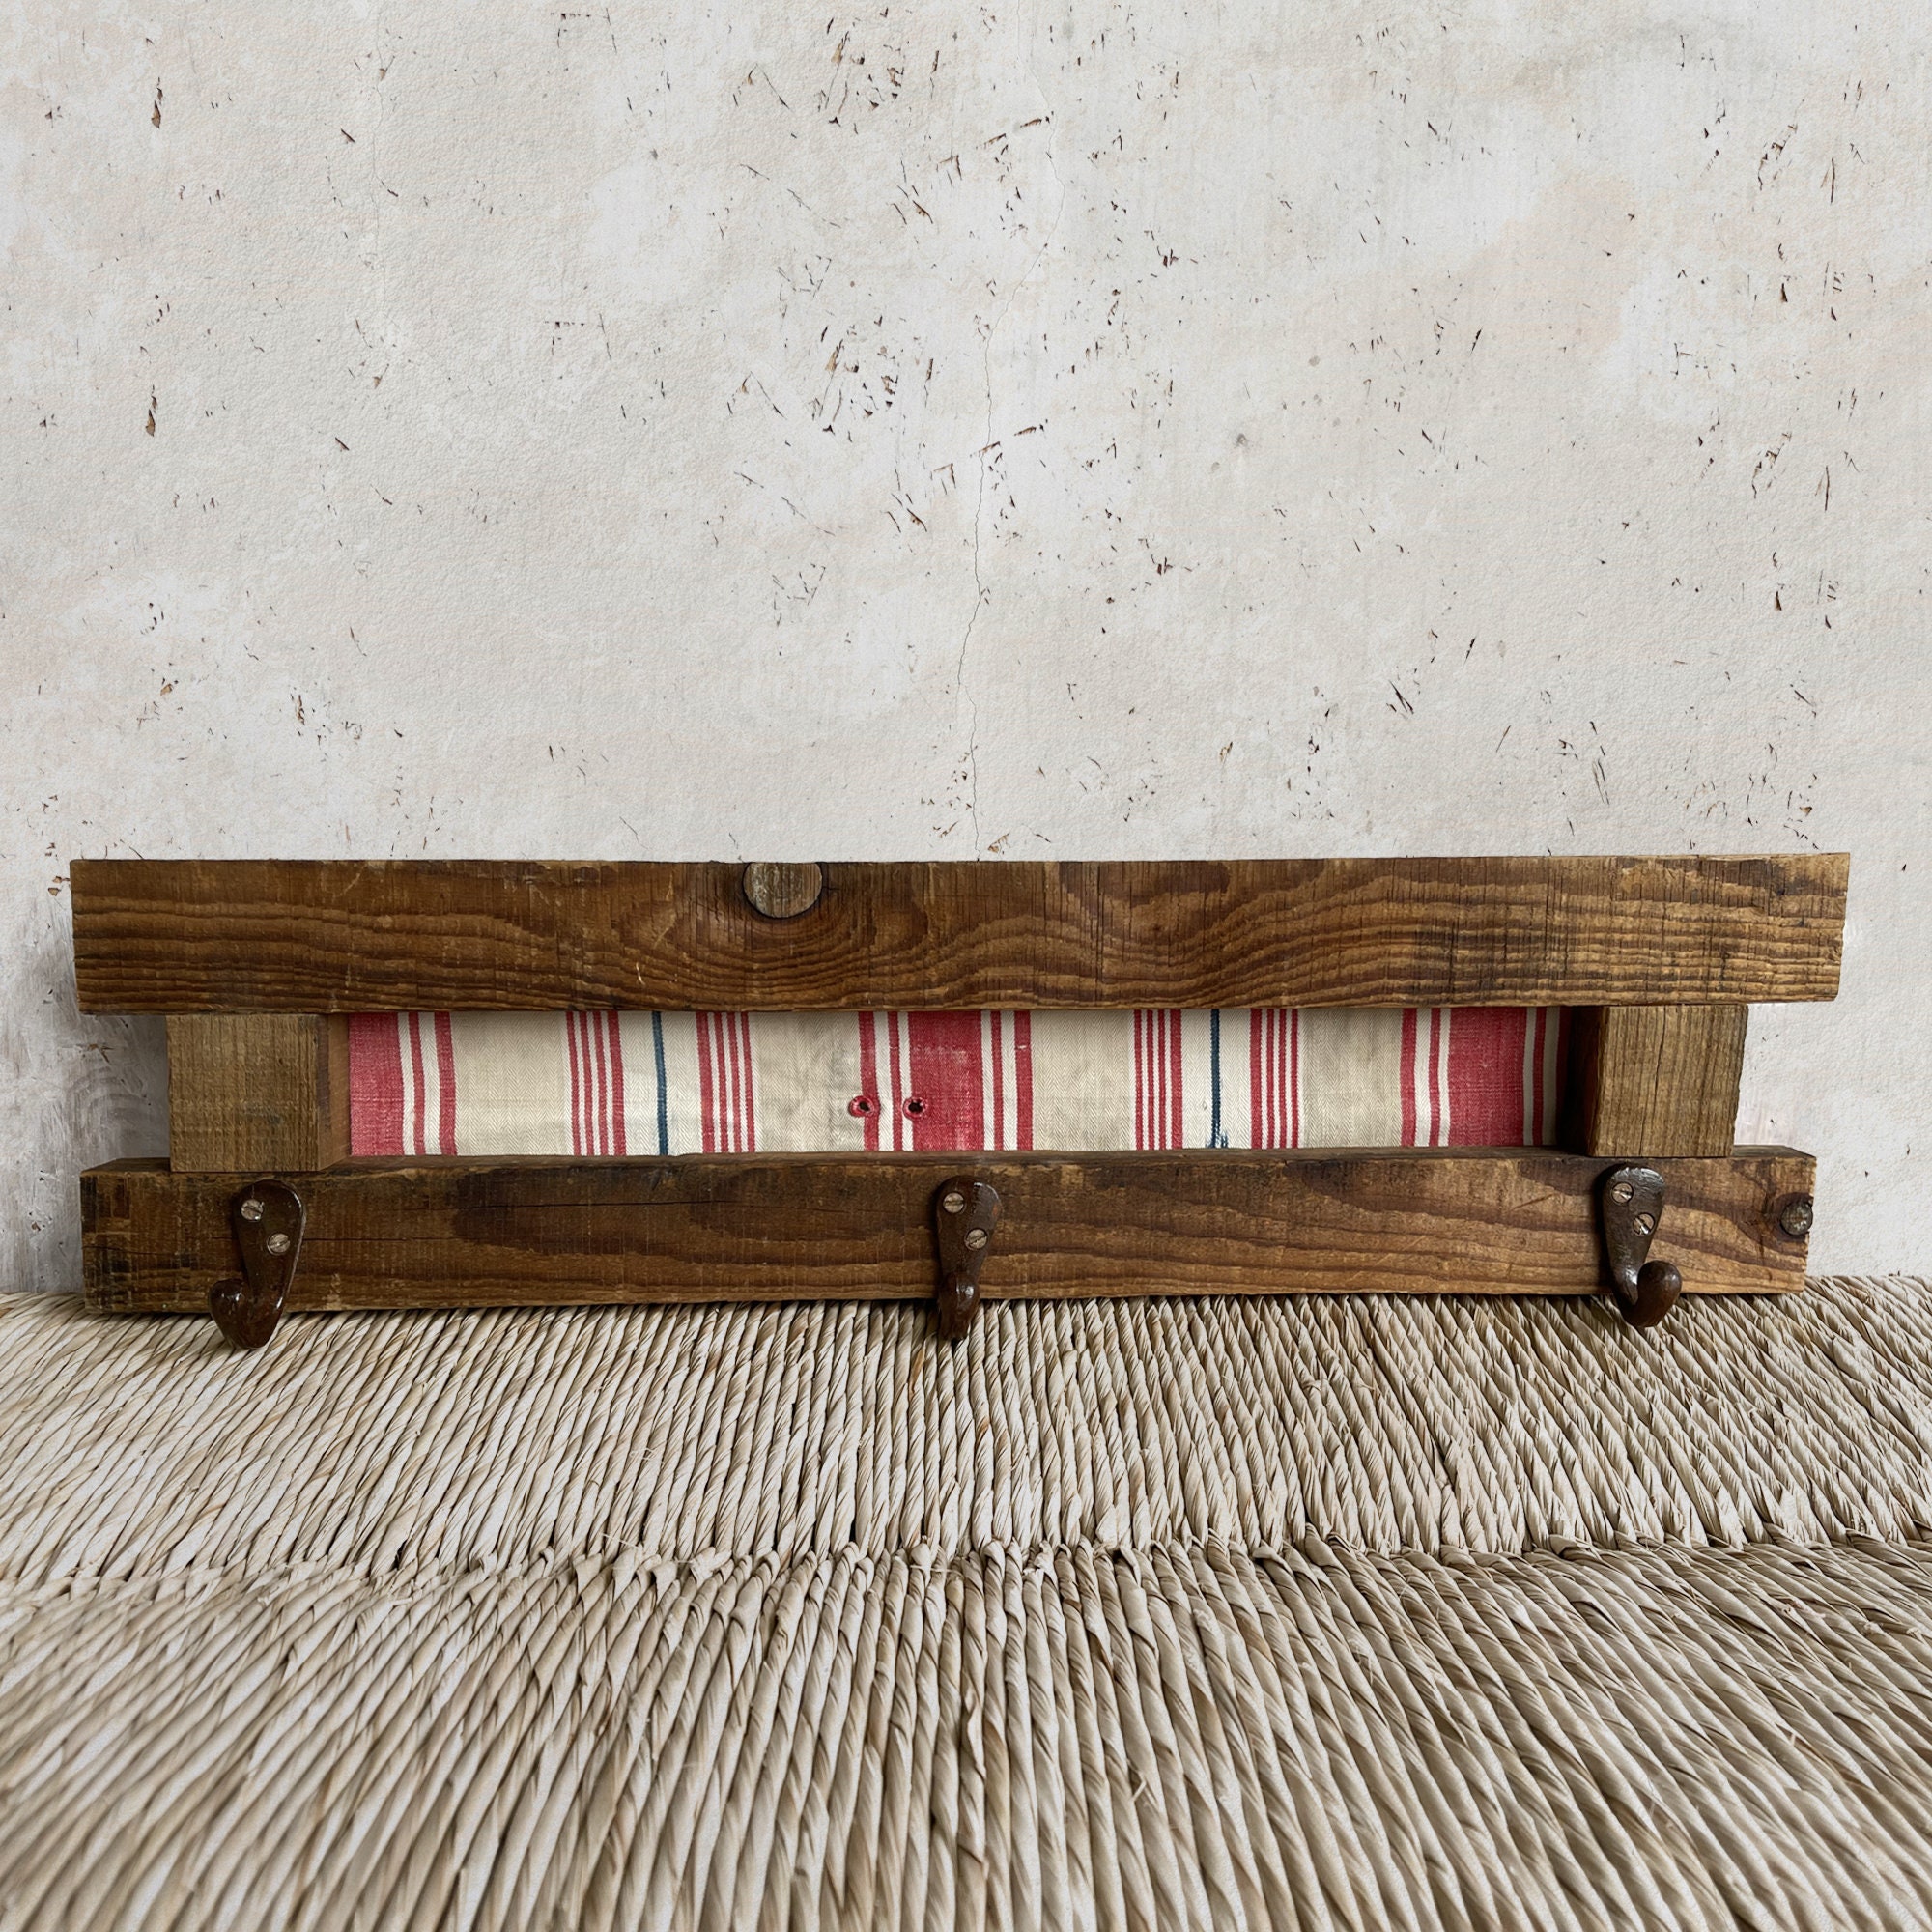 Original perchero para toallas, dos simples perchas de madera puestas del  revés! #accesoriosbaño #deco…